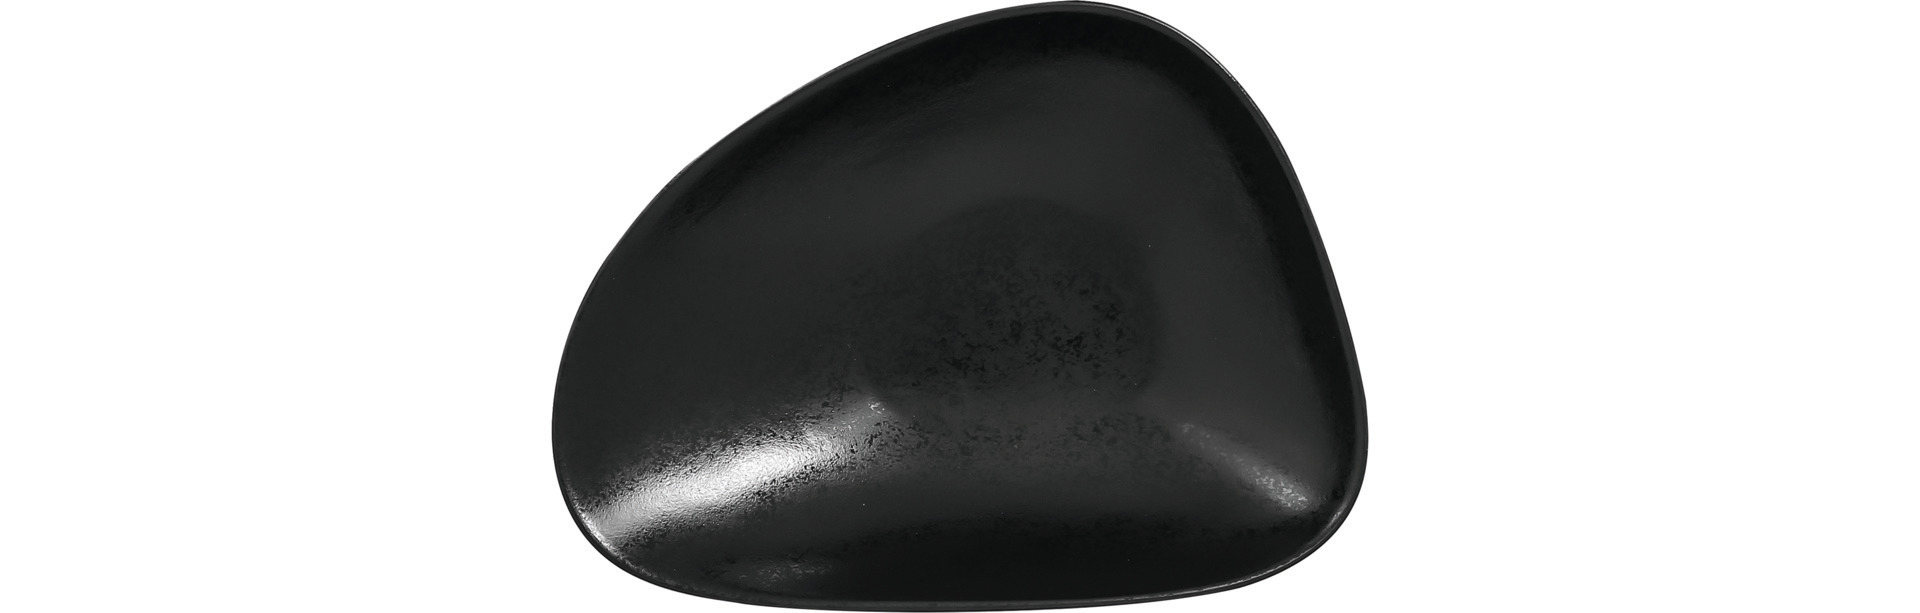 Salatschale shaped 190 x 150 mm / 0,35 l schwarz